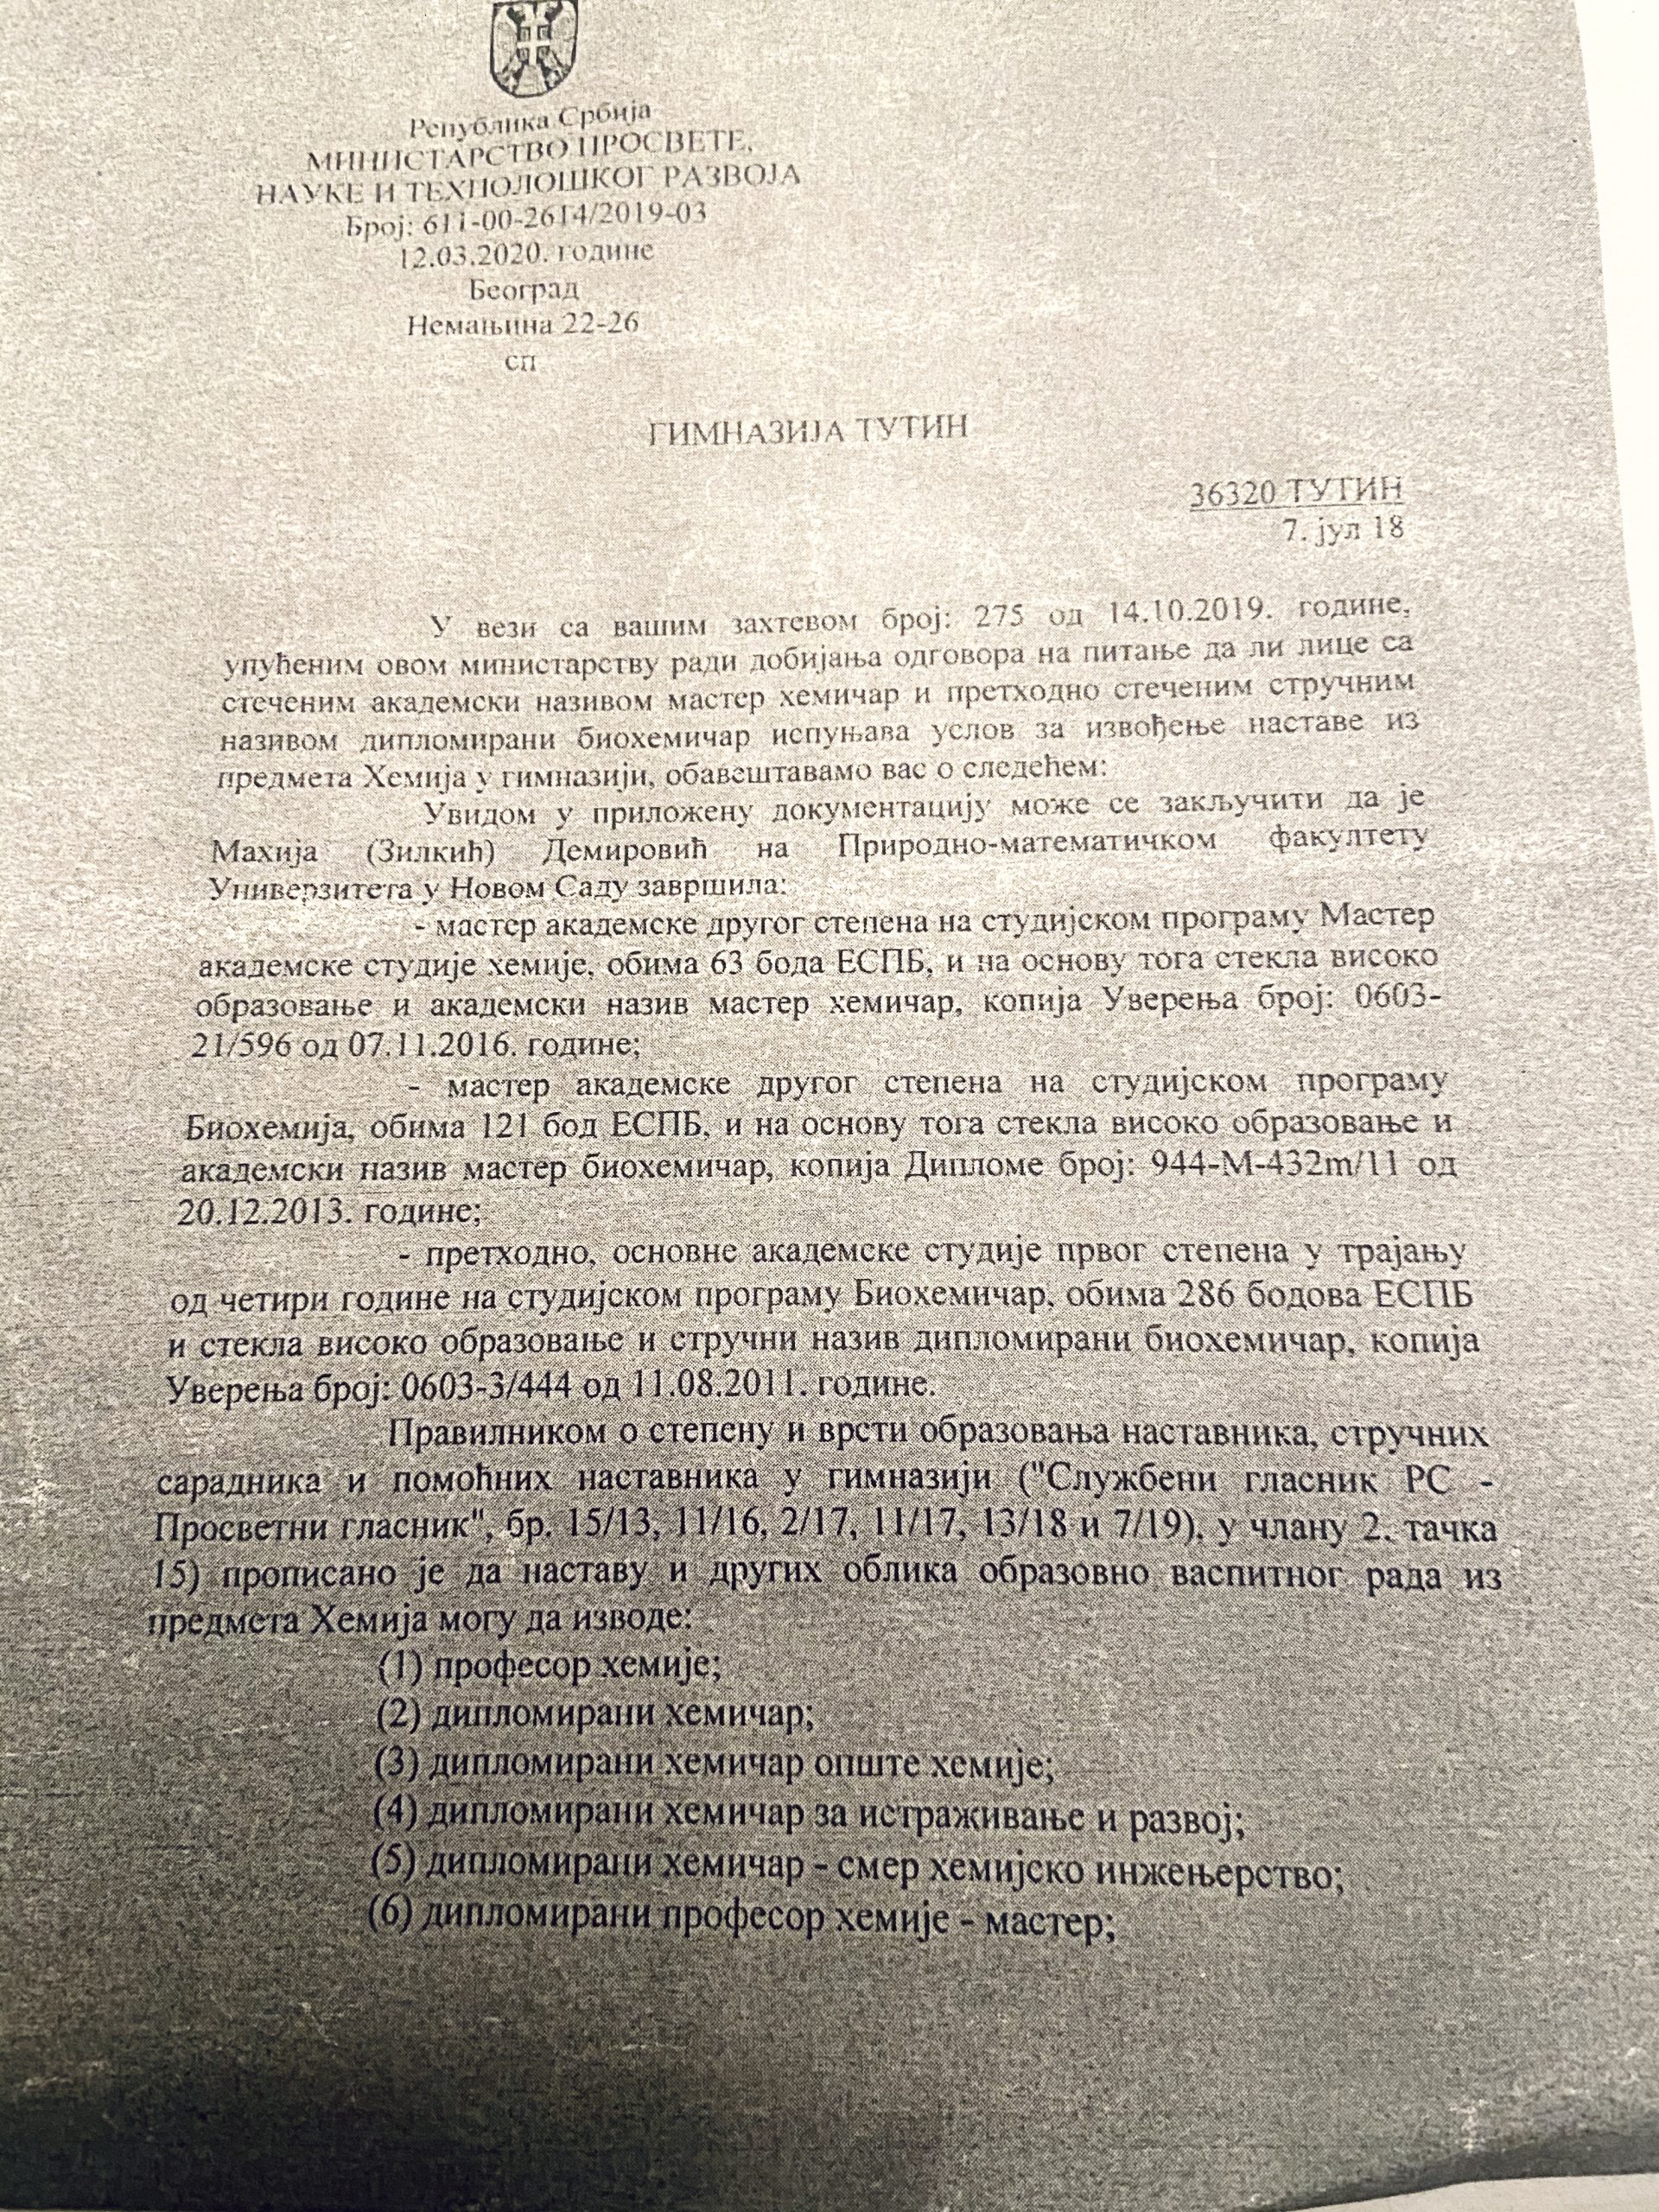 Dopis Ministarstva iz marta o tome da Mahija Demirović ne ispunjava potrebne uslove Foto: Privatna arhiva